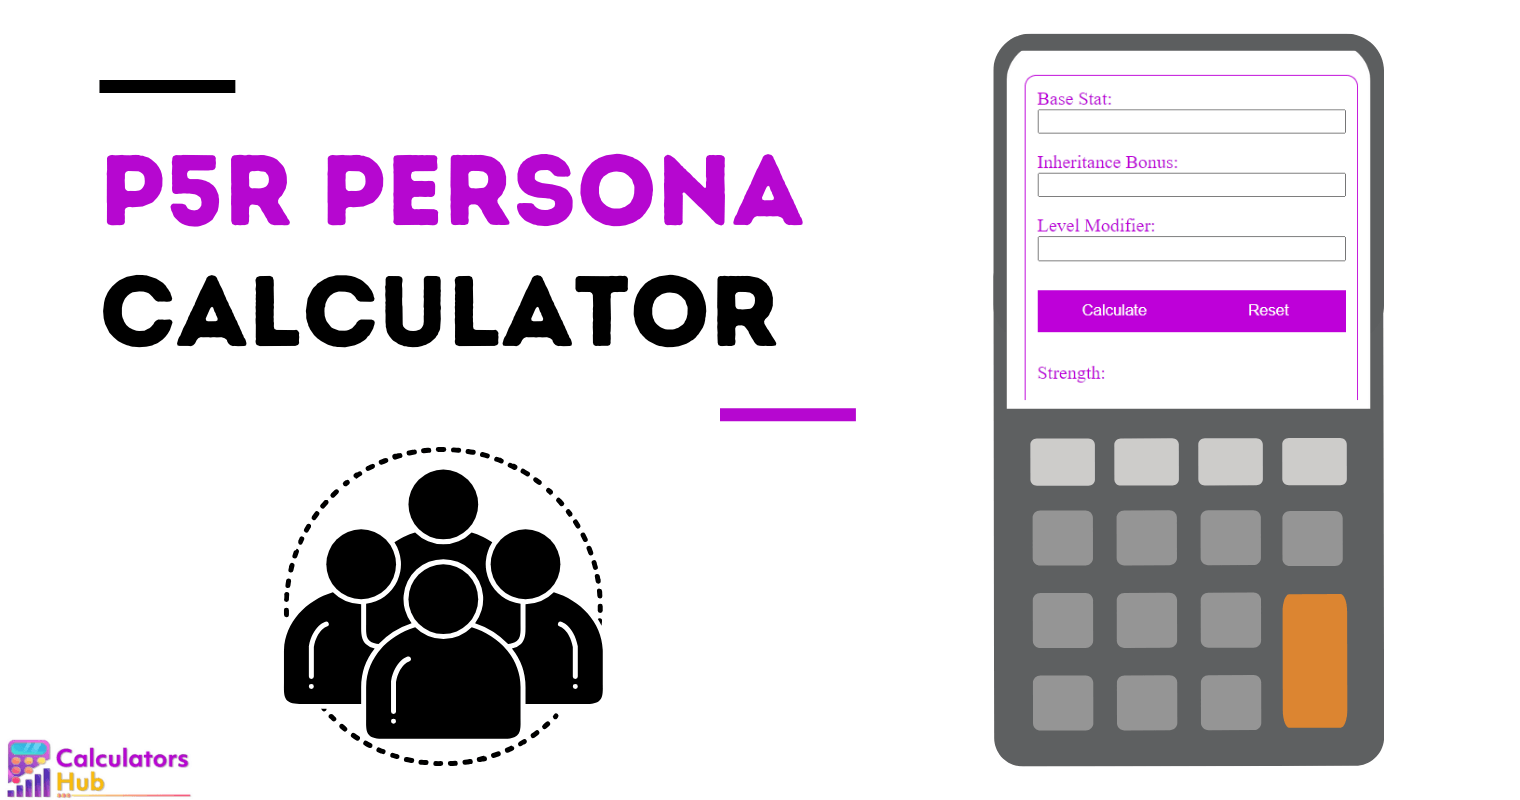 P5R Persona Calculator